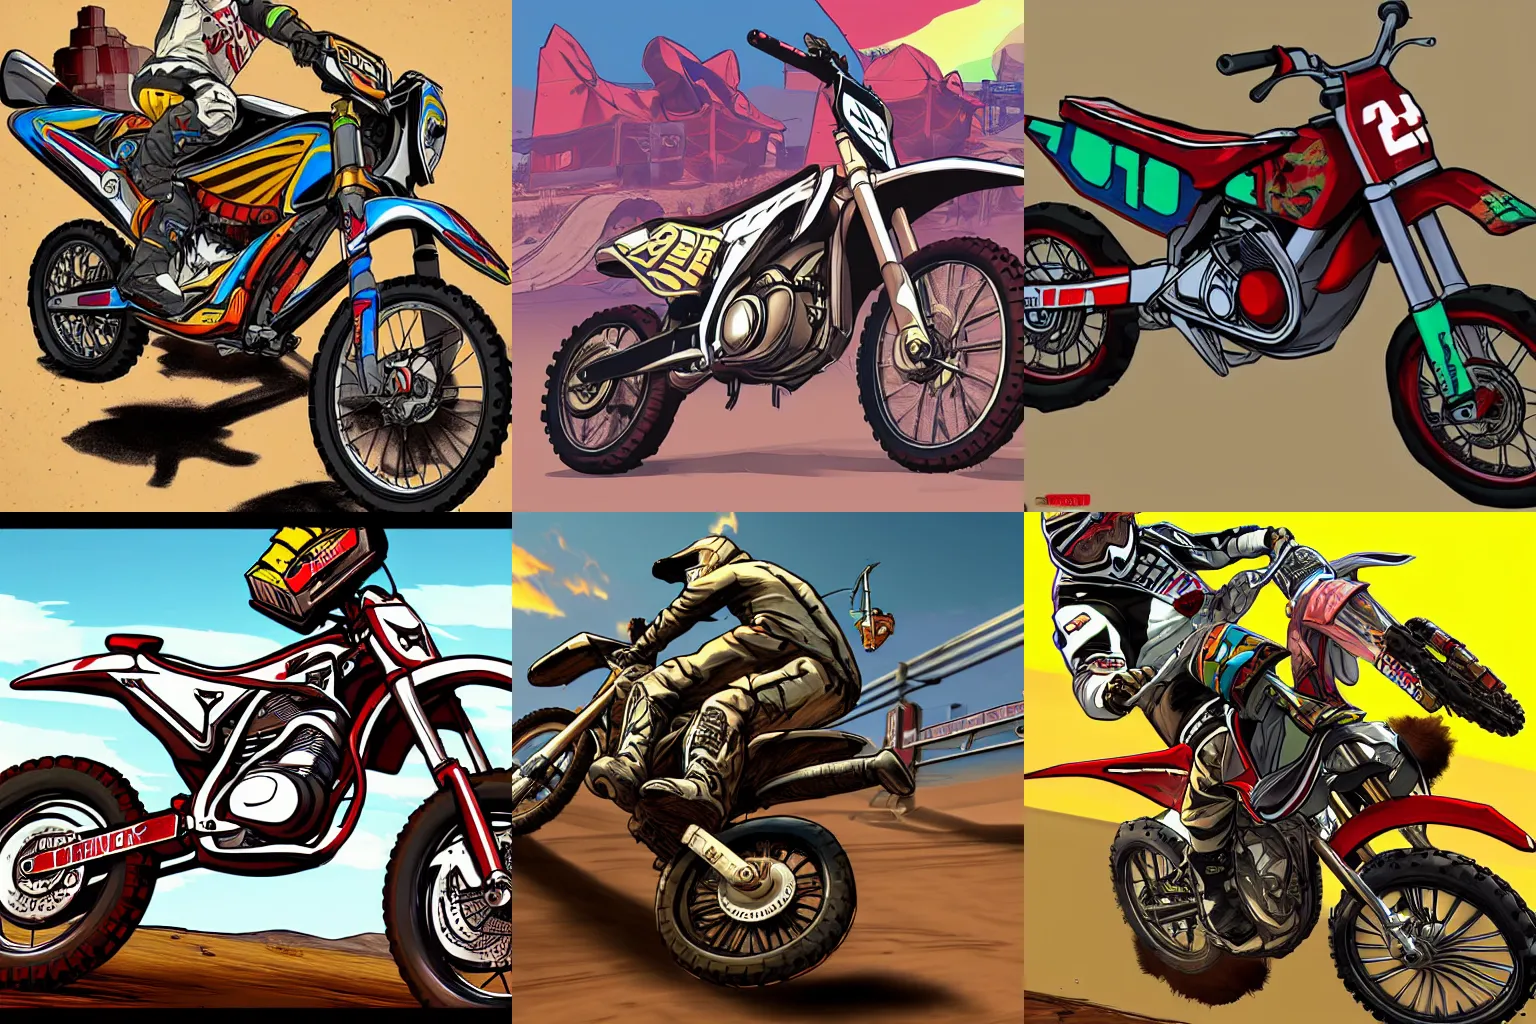 Prompt: motocross bike, gta 5 cover art, borderlands style, celshading, trending on artstation